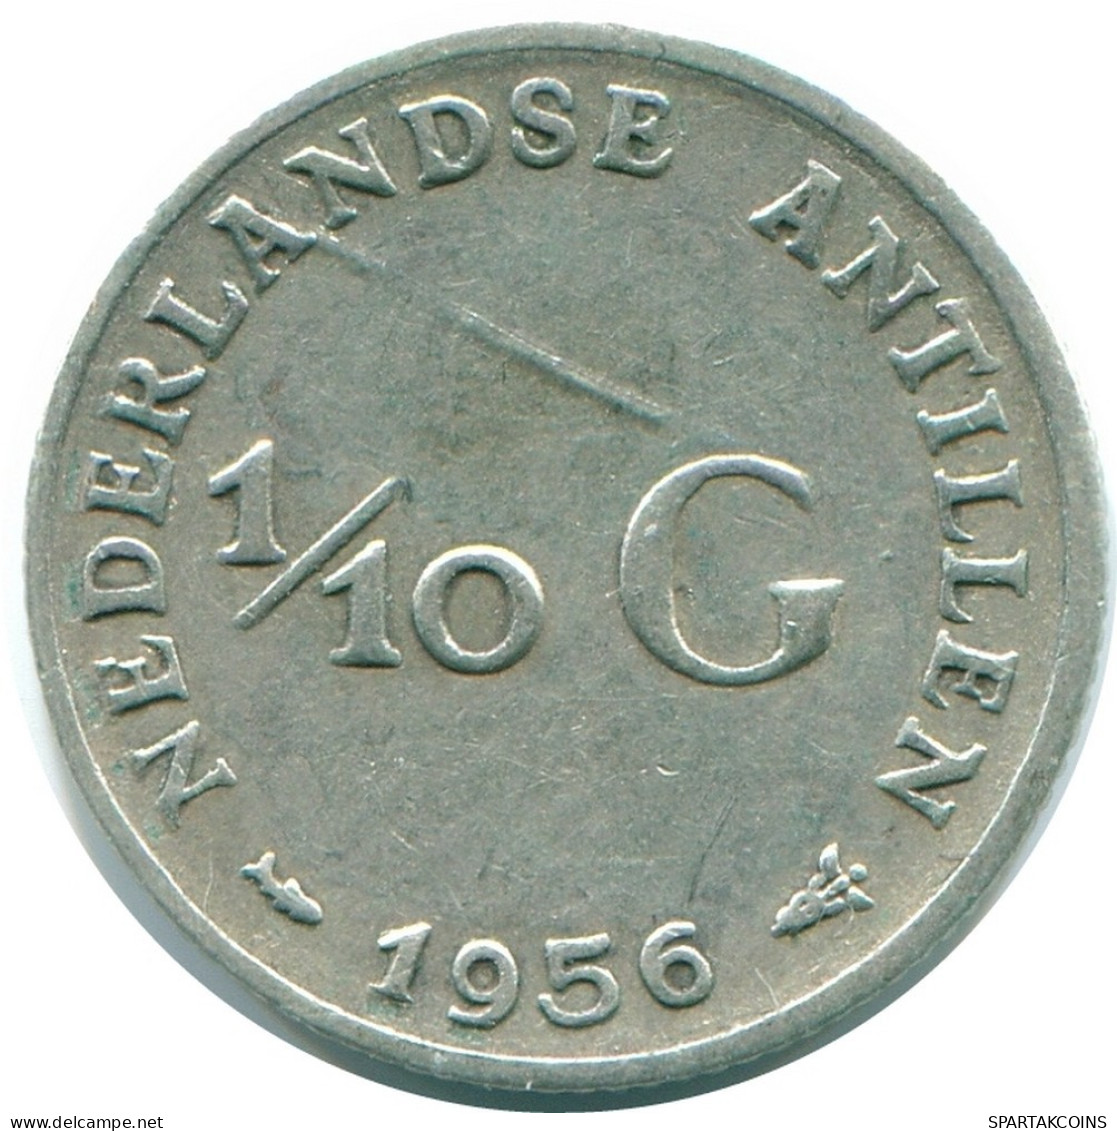 1/10 GULDEN 1956 NIEDERLÄNDISCHE ANTILLEN SILBER Koloniale Münze #NL12079.3.D.A - Nederlandse Antillen